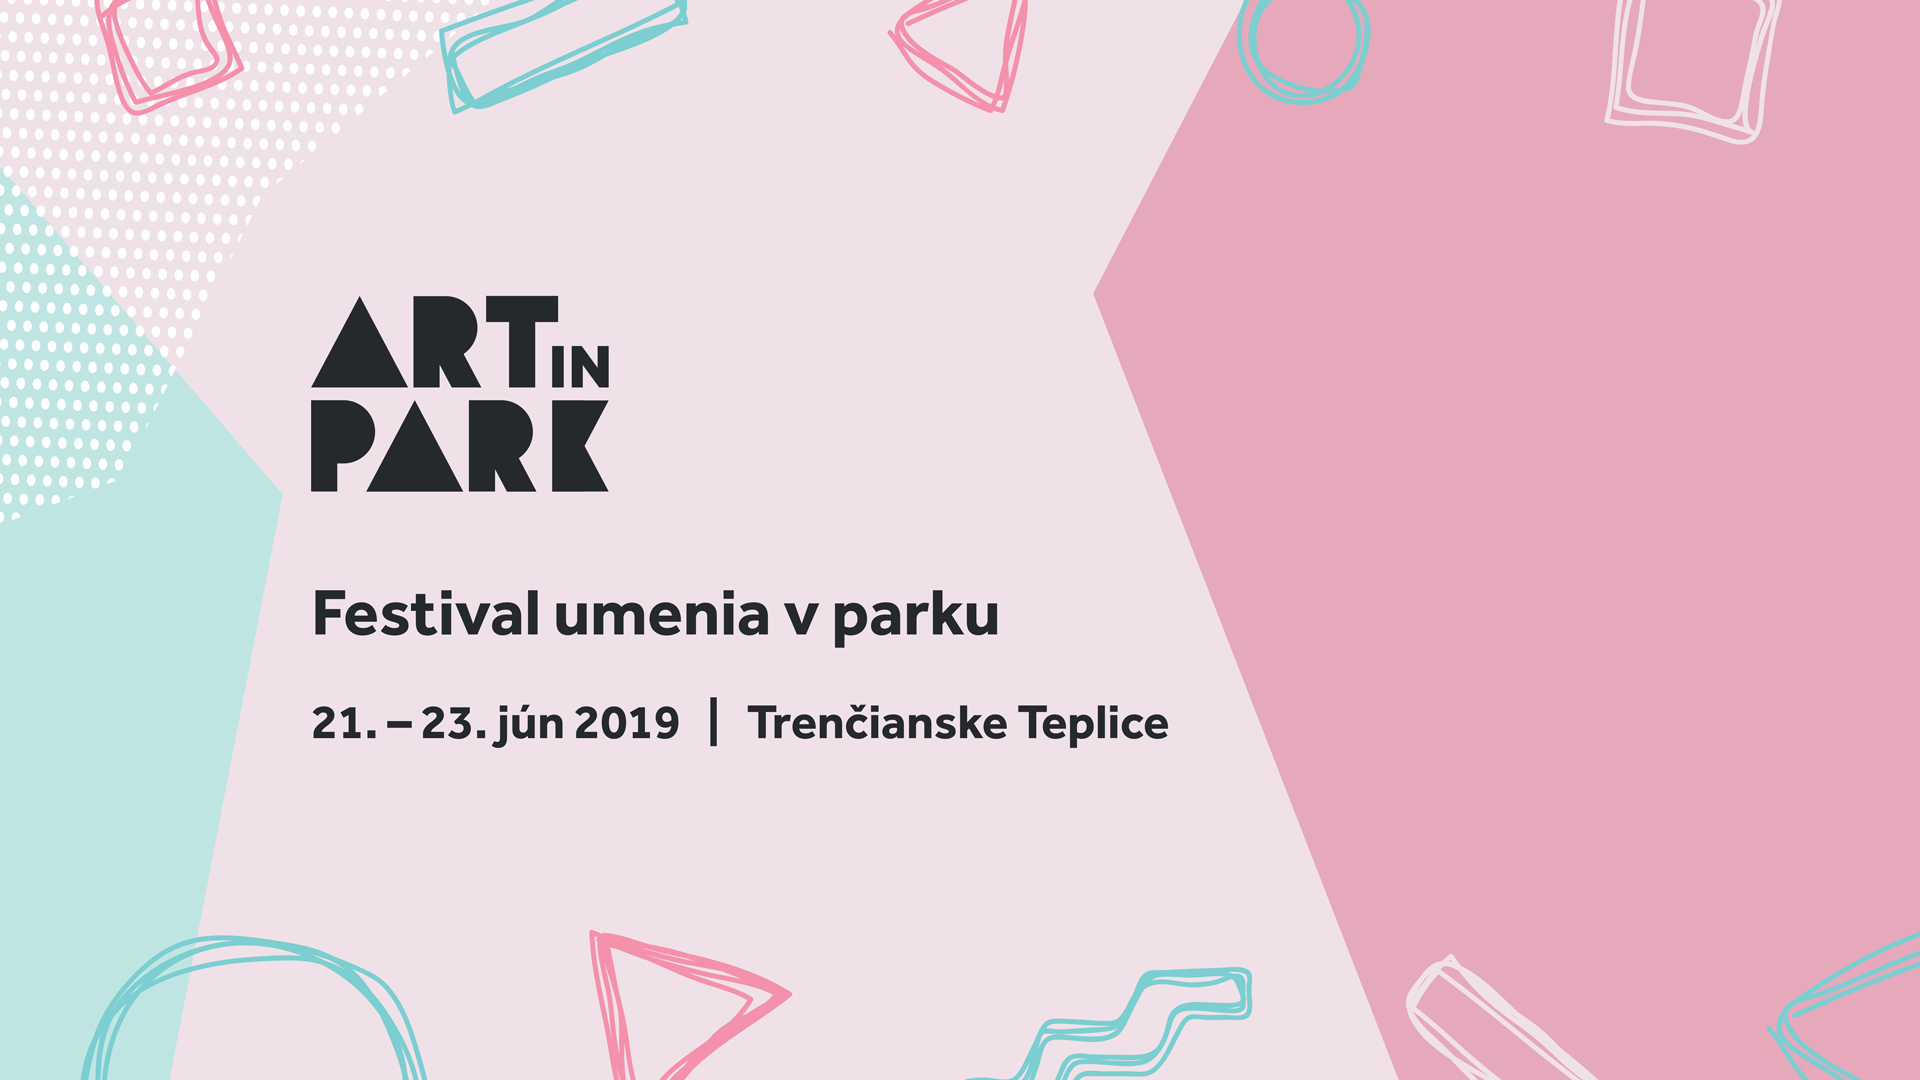 ART IN PARK 2019 Trenianske Teplice - festival umenia v parku